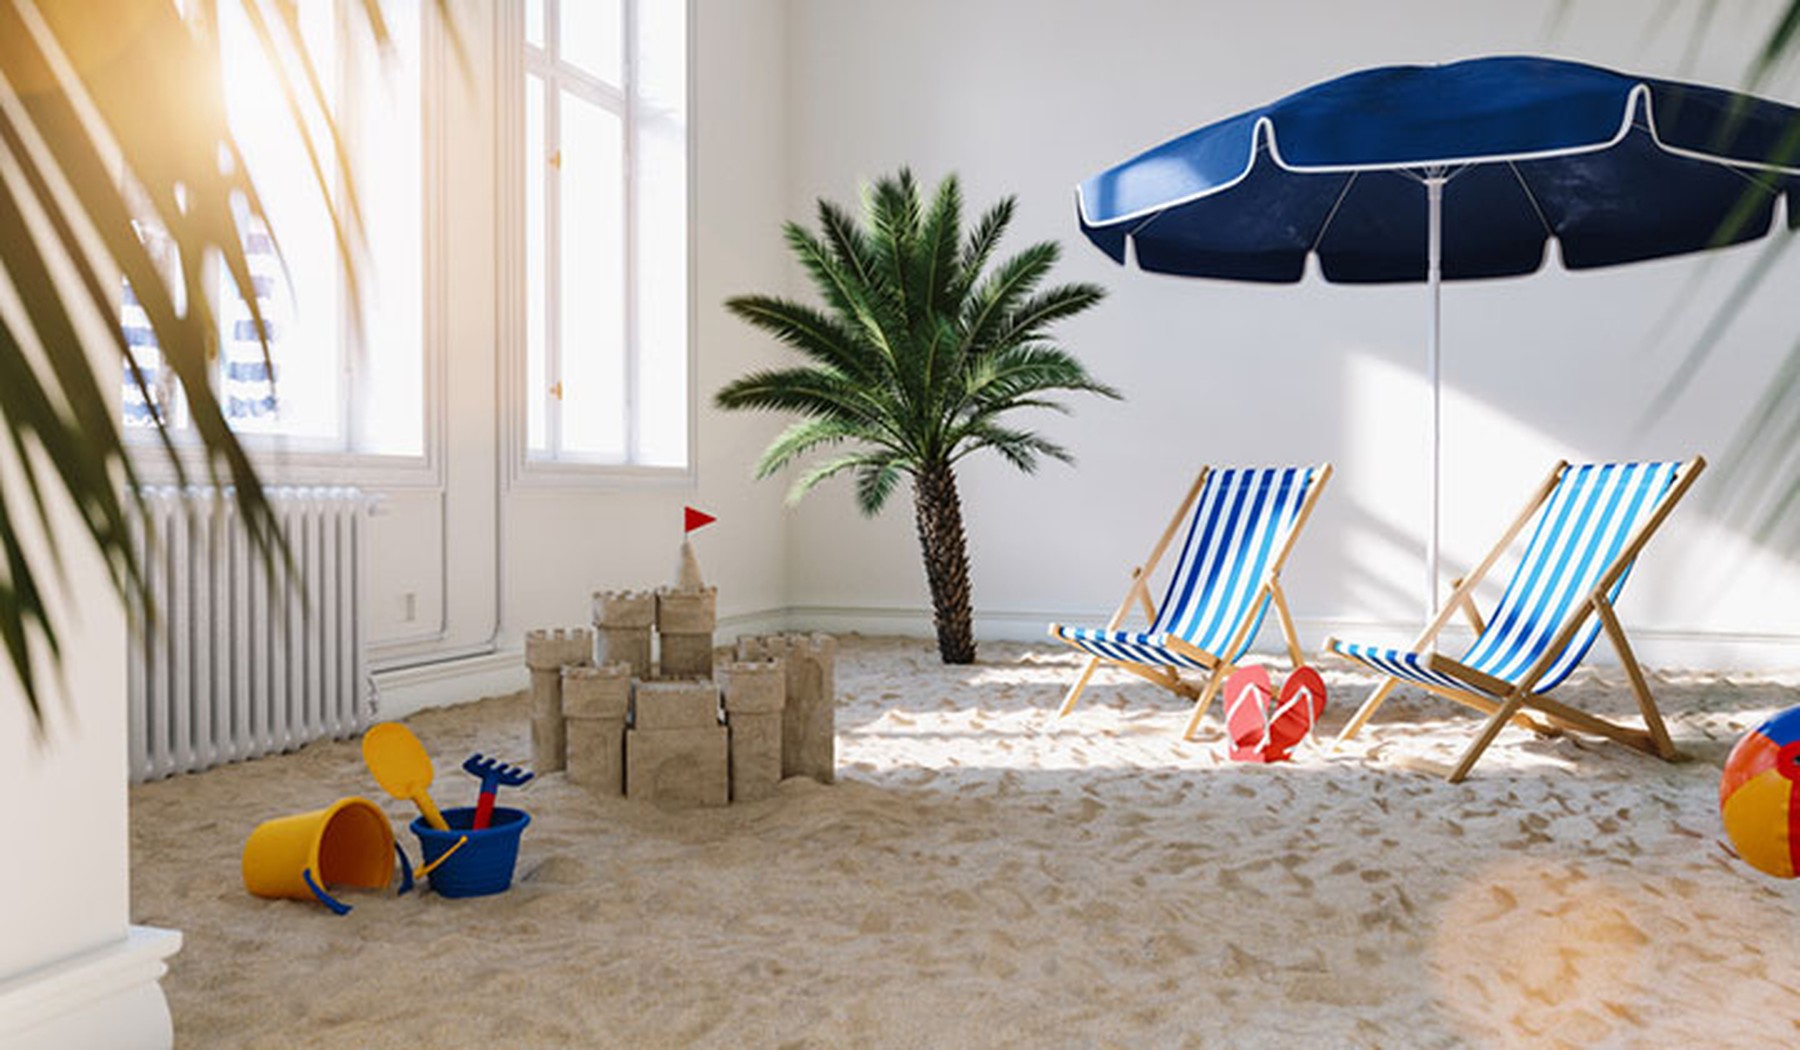 Una habitación con arena de playa, sombrilla, sillas y juguetes